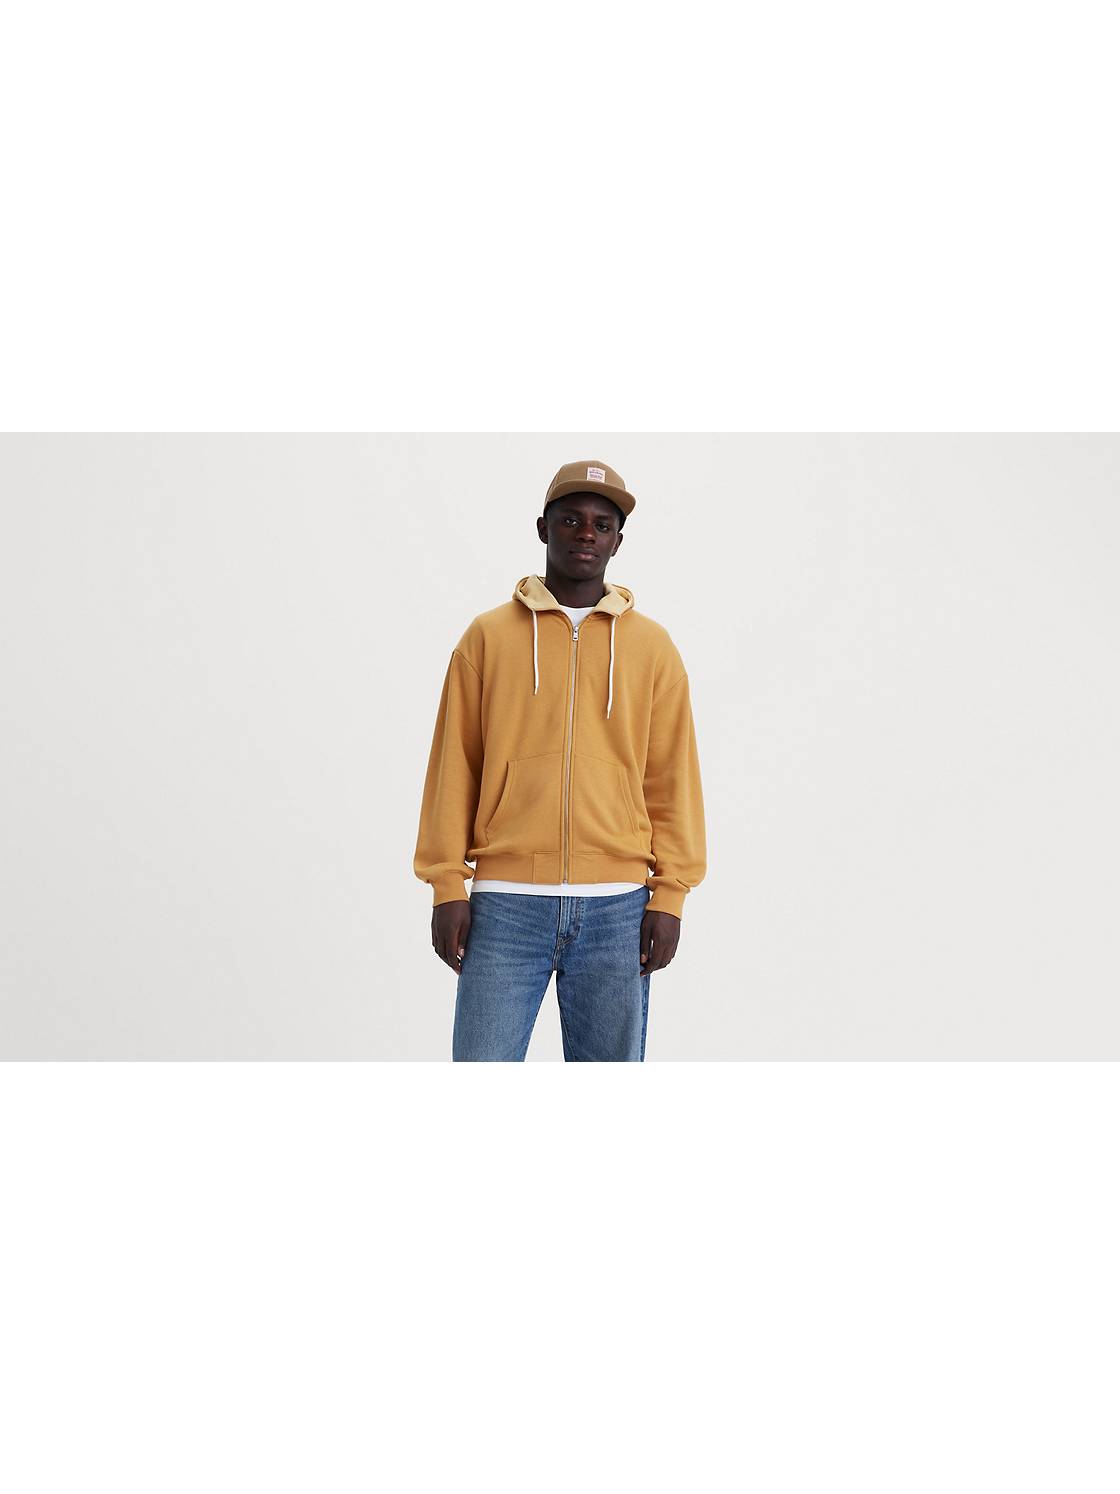 Men's Yellow Hoodies & Sweatshirts